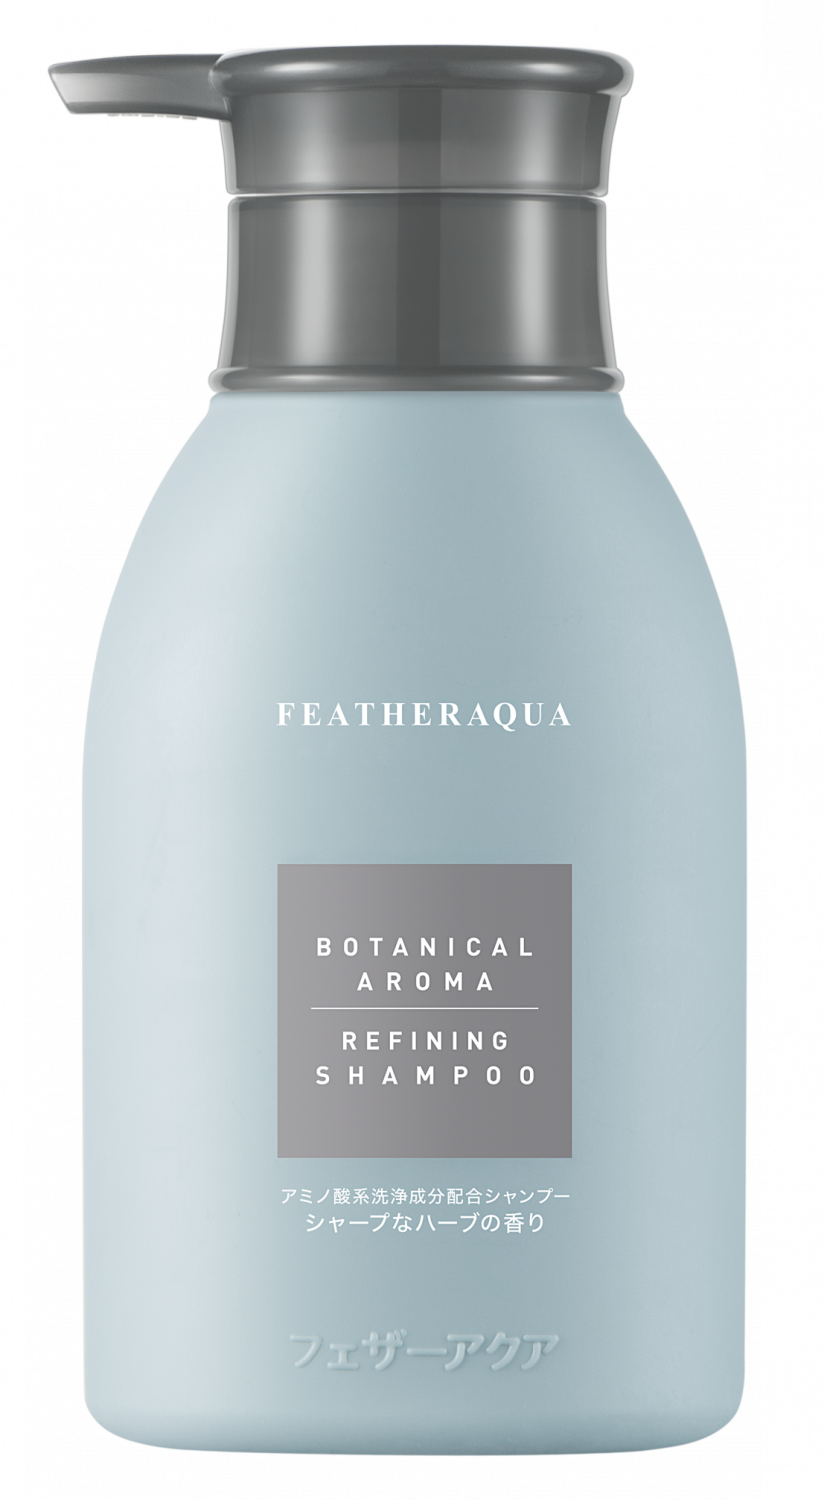 Featheraqua Botanical Aroma Refining Shampoo J5 280ml - интернет-магазин профессиональной косметики Spadream, изображение 41784